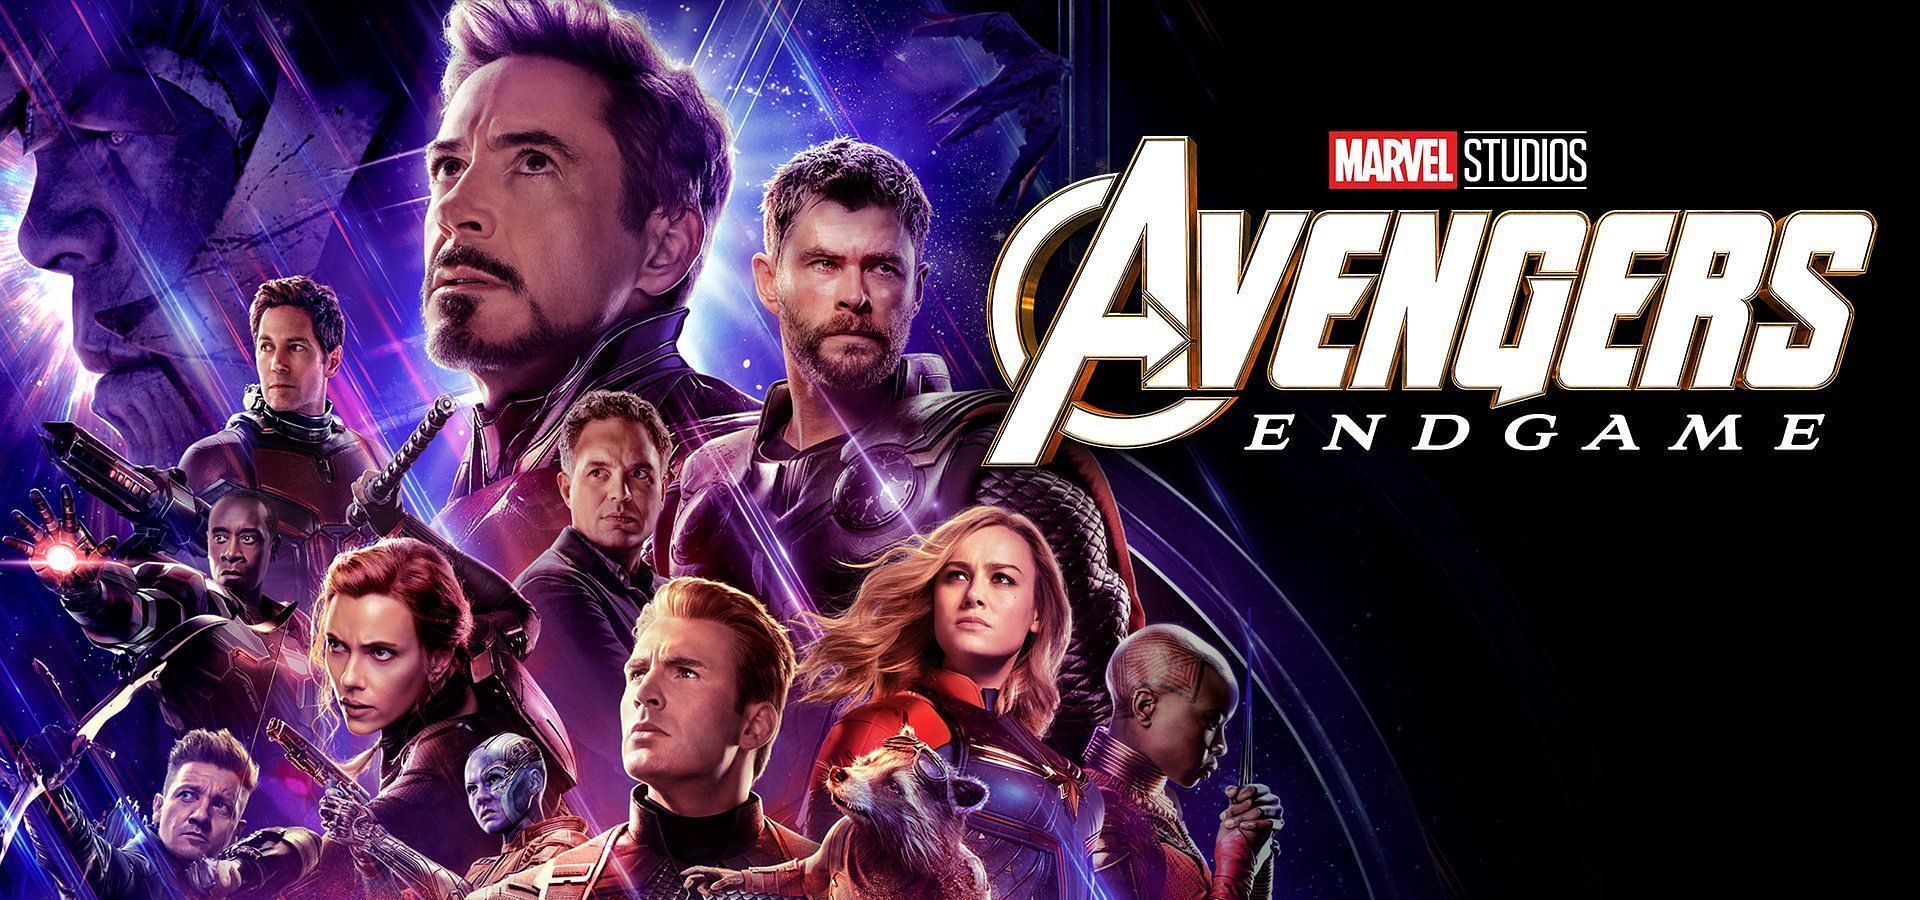 The official poster for Avengers: Endgame (Image via Marvel Studios)